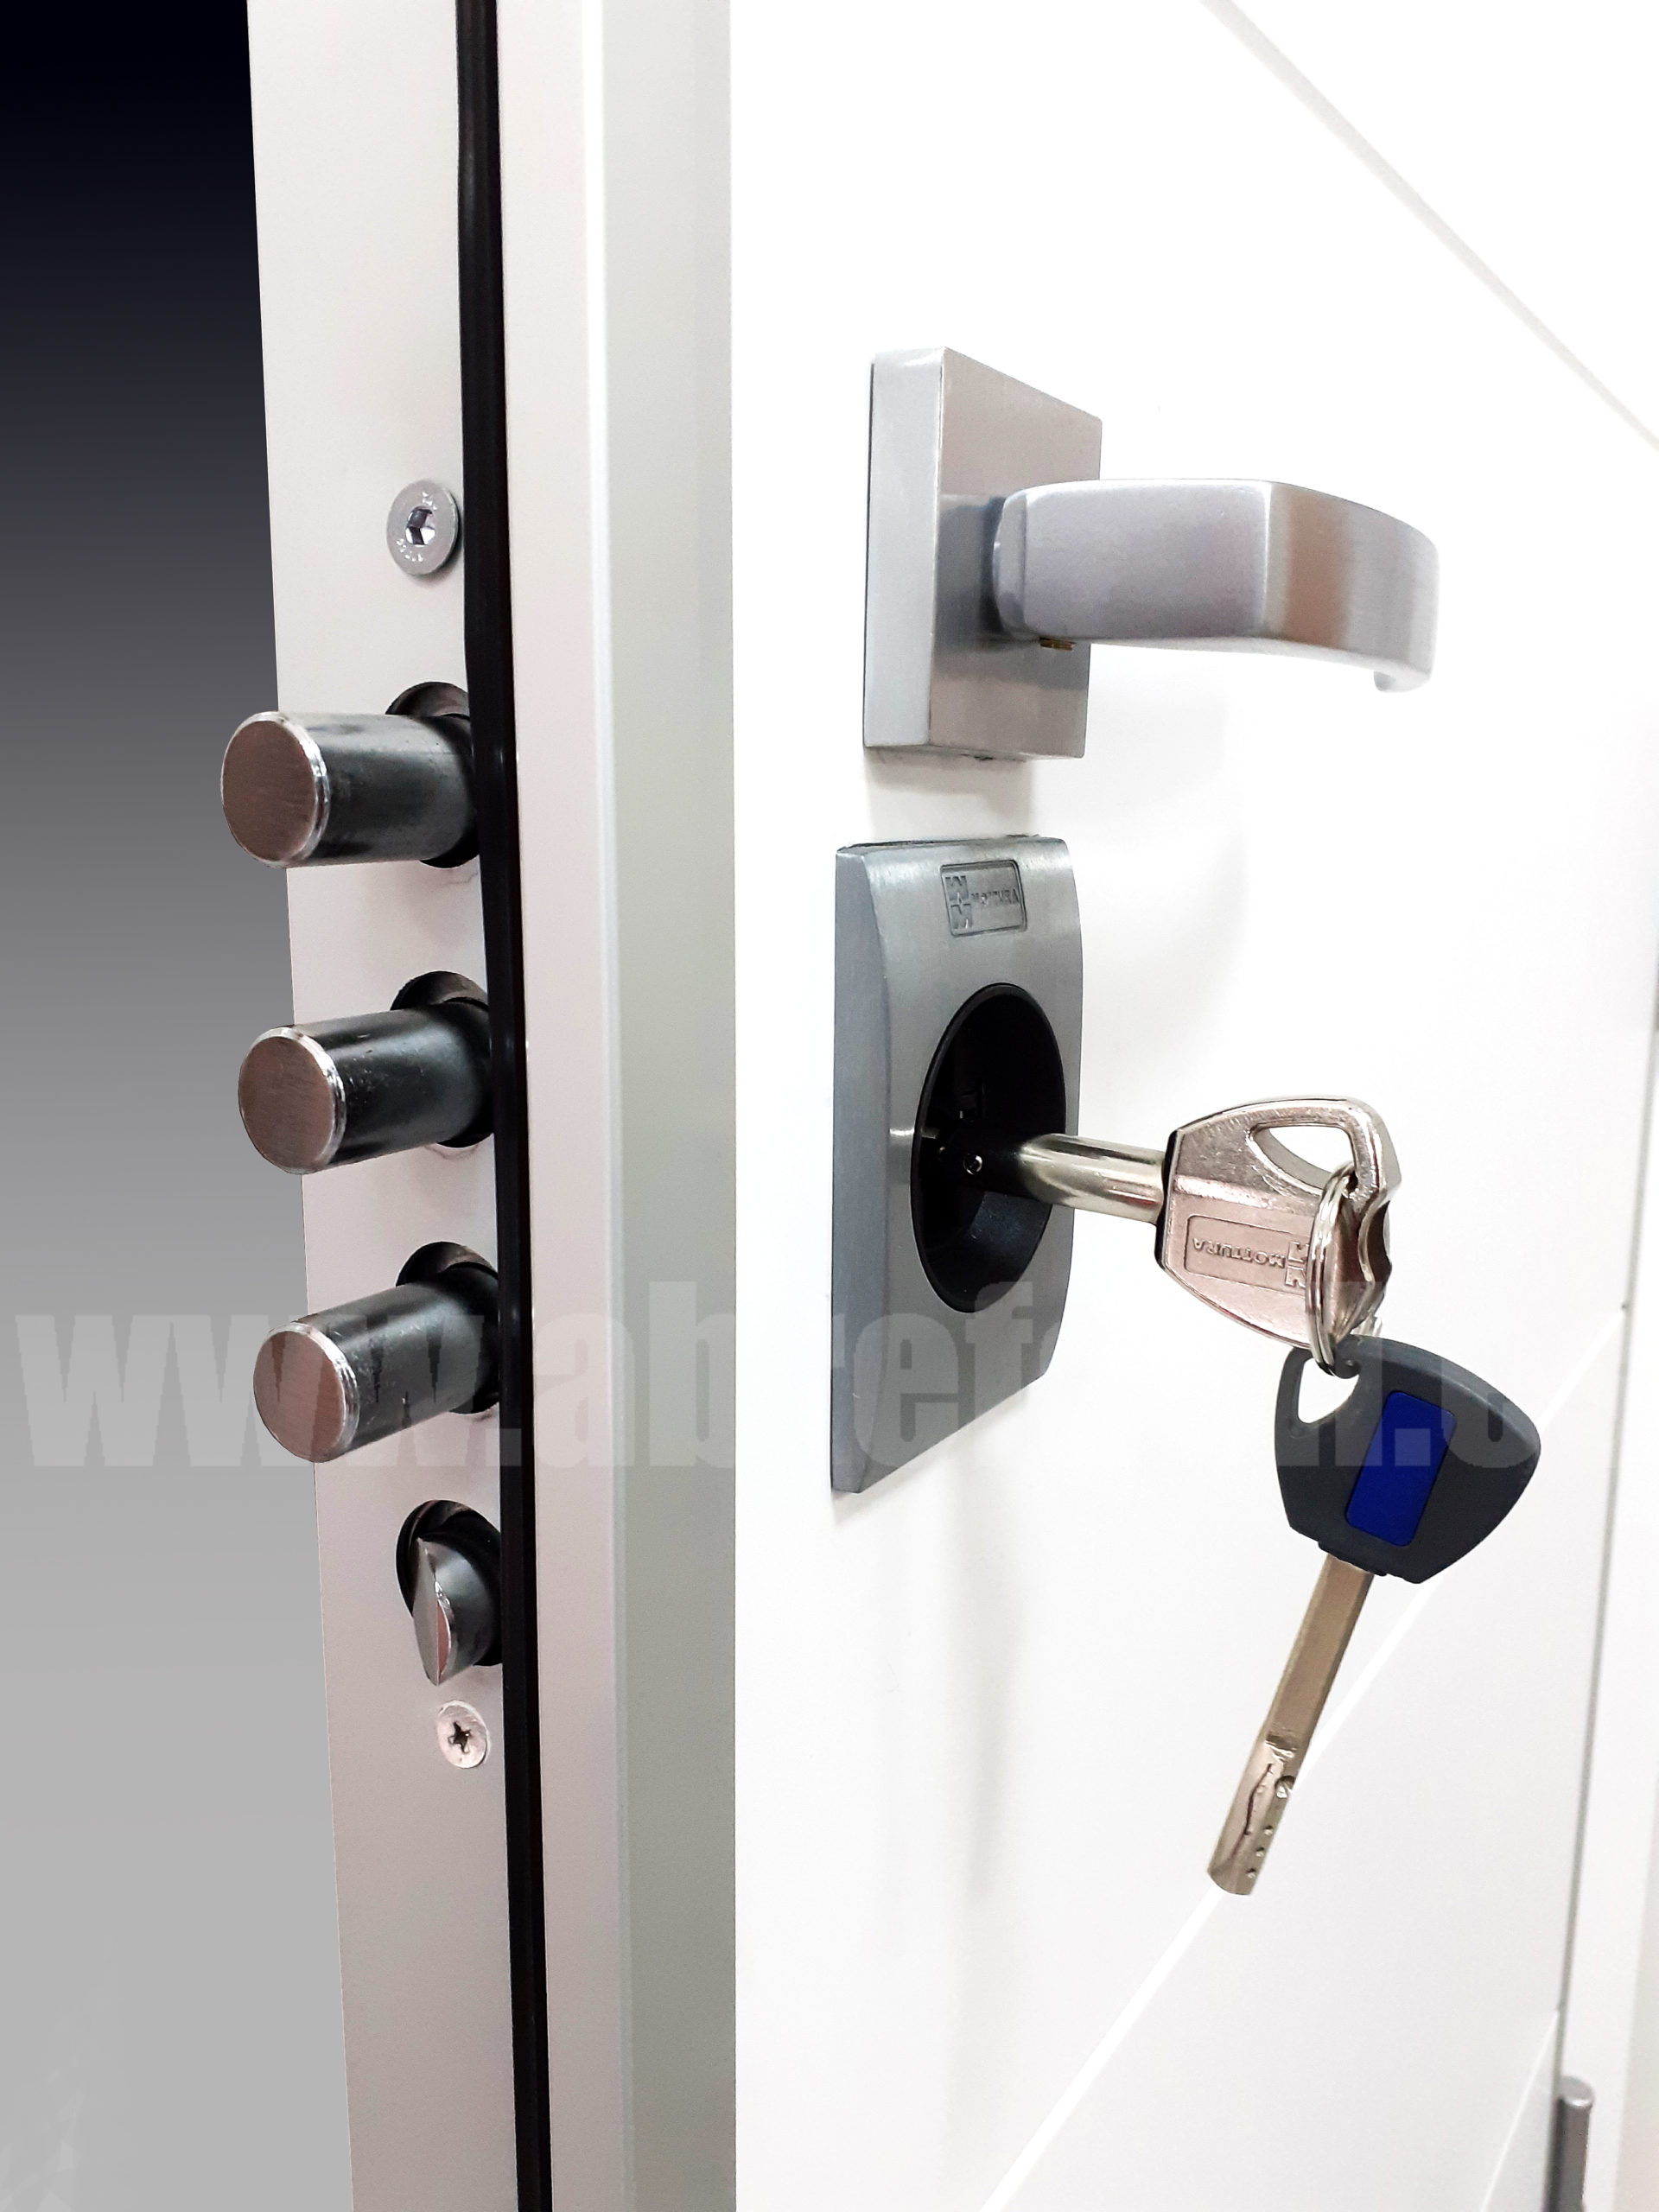 KESO 8000 Ω2 - Acorasur Técnicos en Seguridad. Puertas acorazadas. Acorasur  Técnicos en Seguridad. Puertas acorazadas.